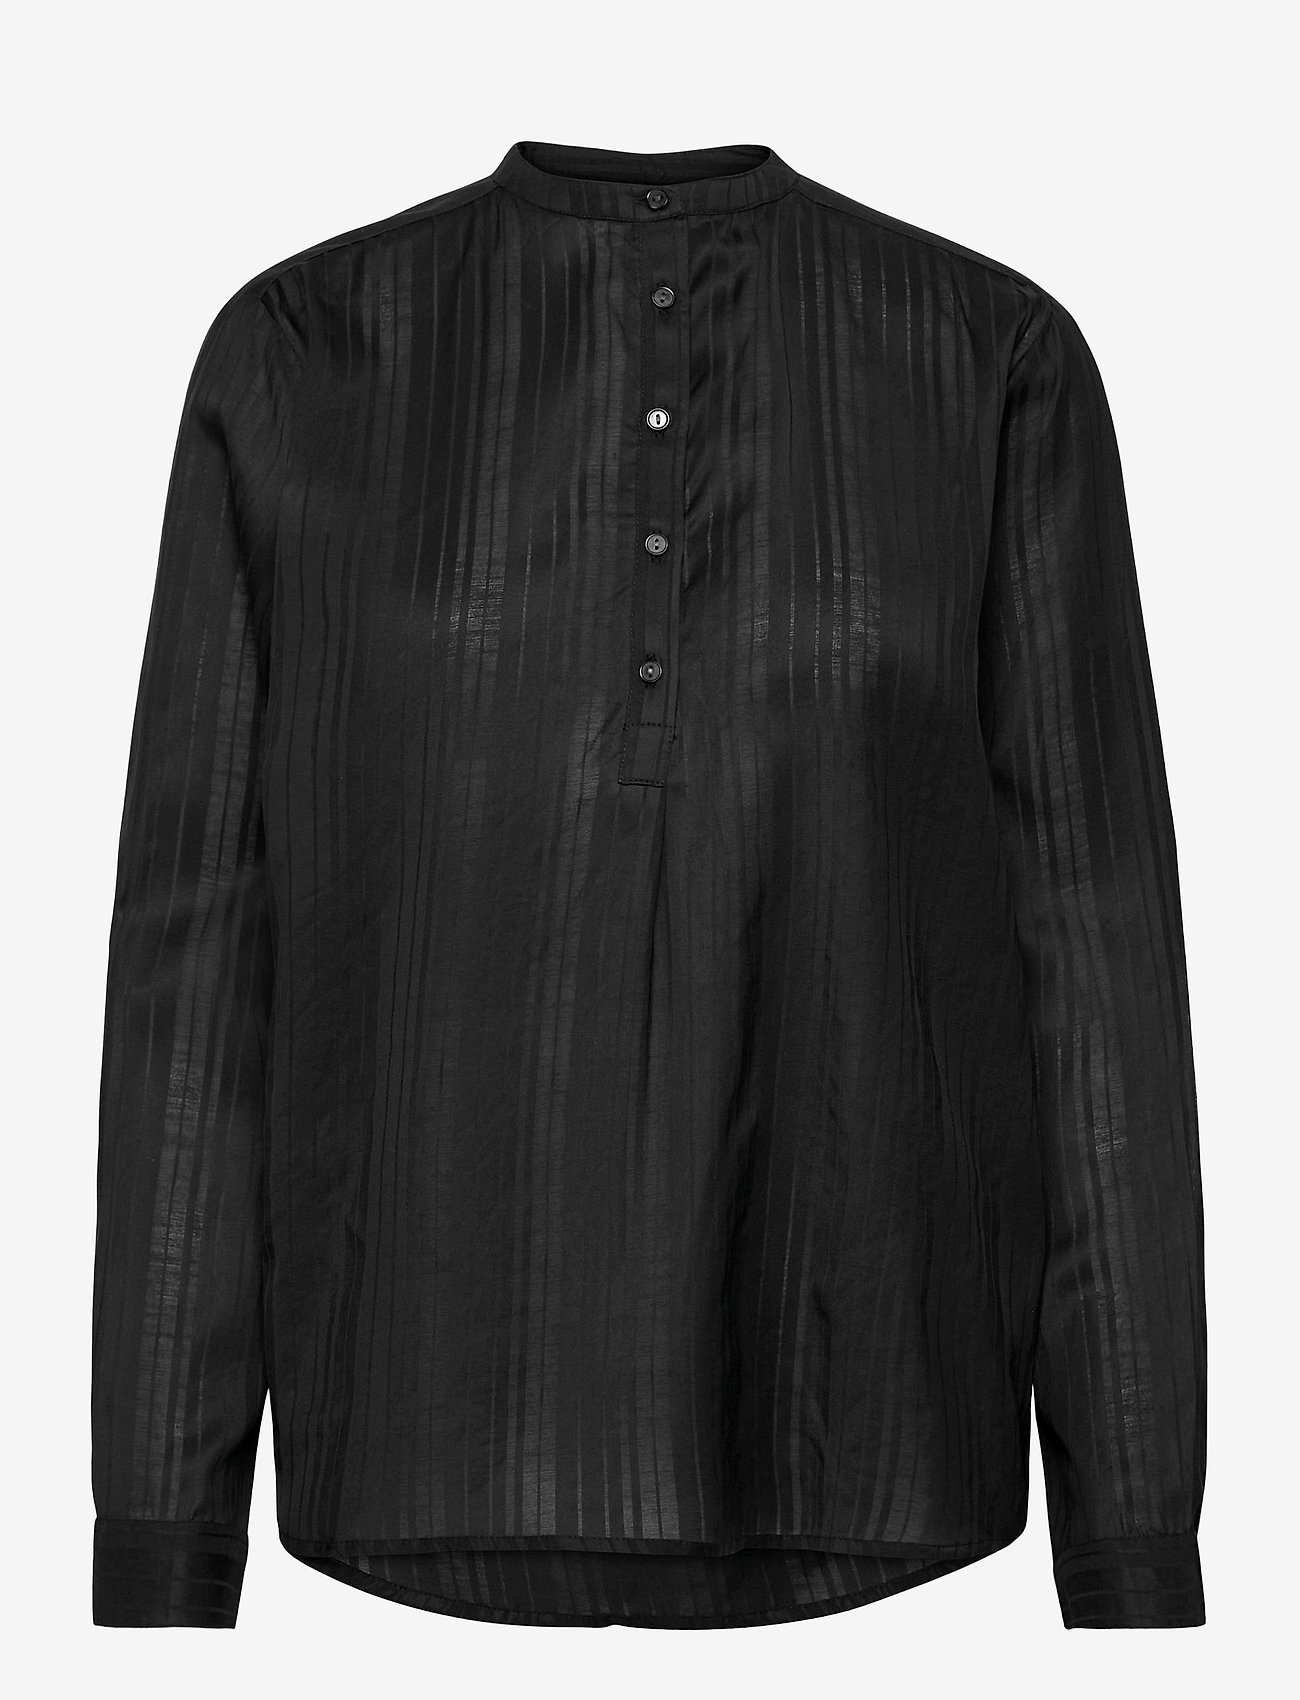 Lollys Laundry - Lux Shirt - palaidinės ilgomis rankovėmis - black - 0